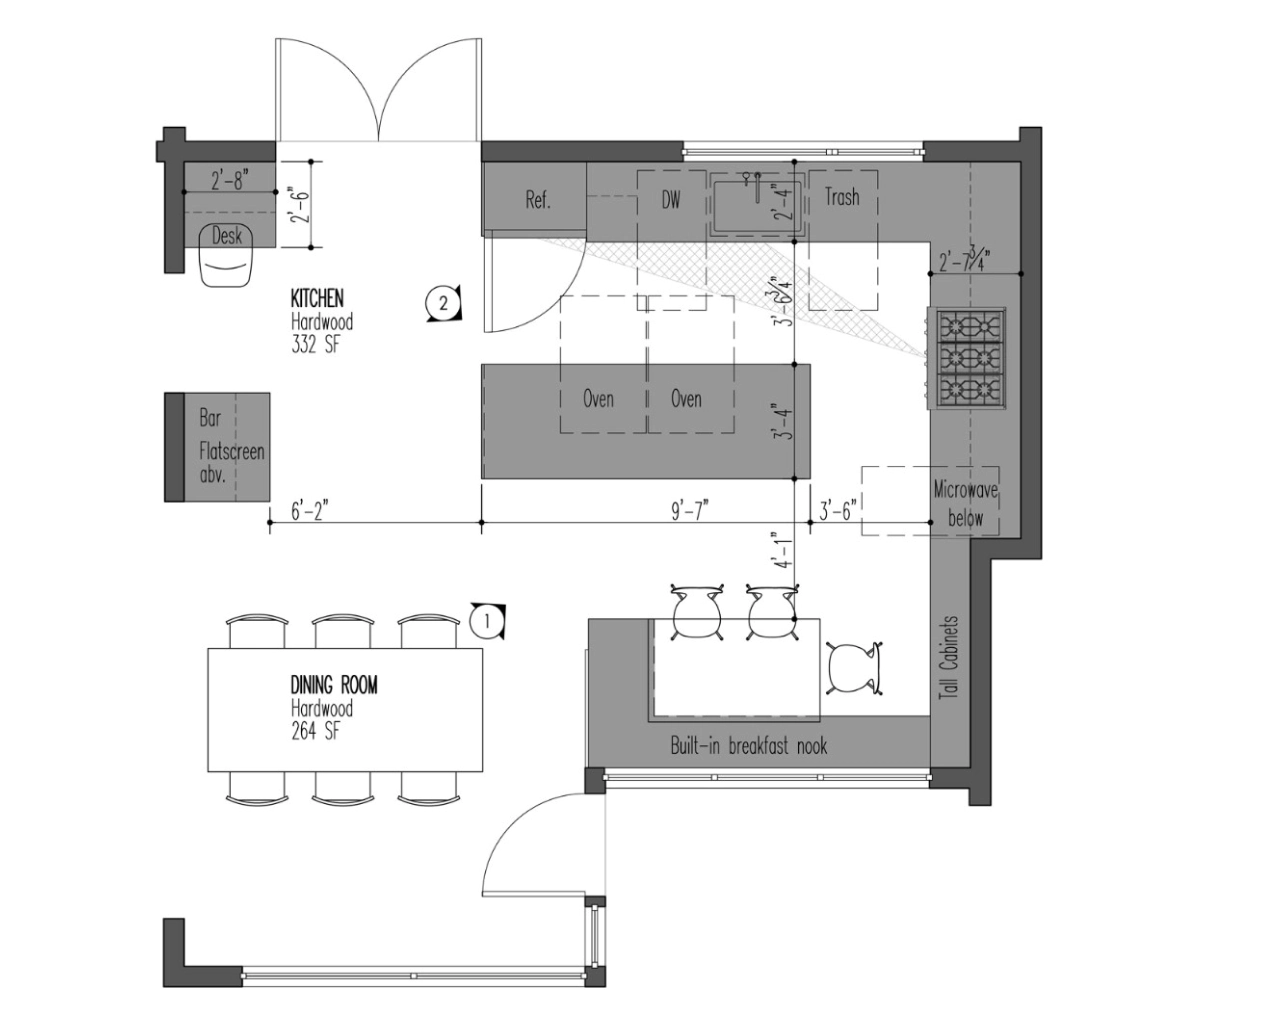 2D floor plan of residential house